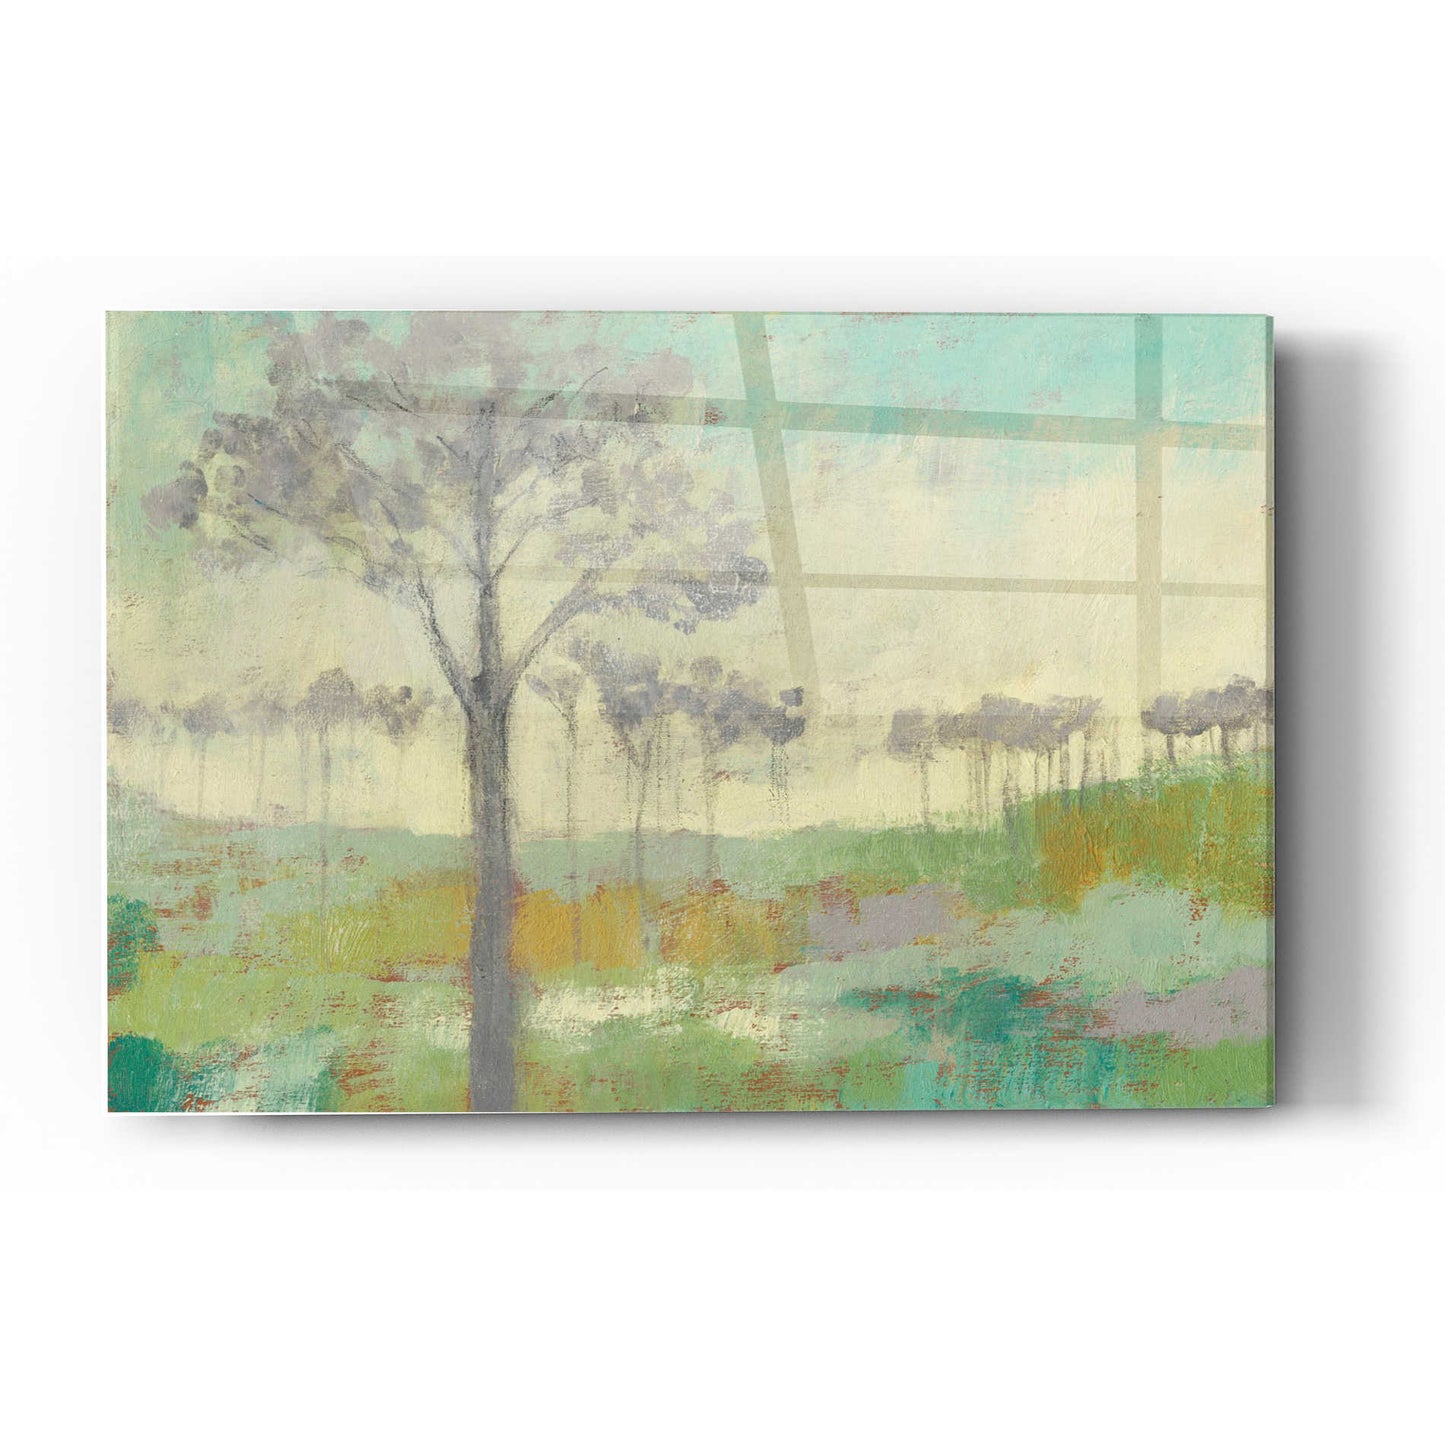 Epic Art 'Tree Stand II' by Jennifer Goldberger Acrylic Glass Wall Art,24x36